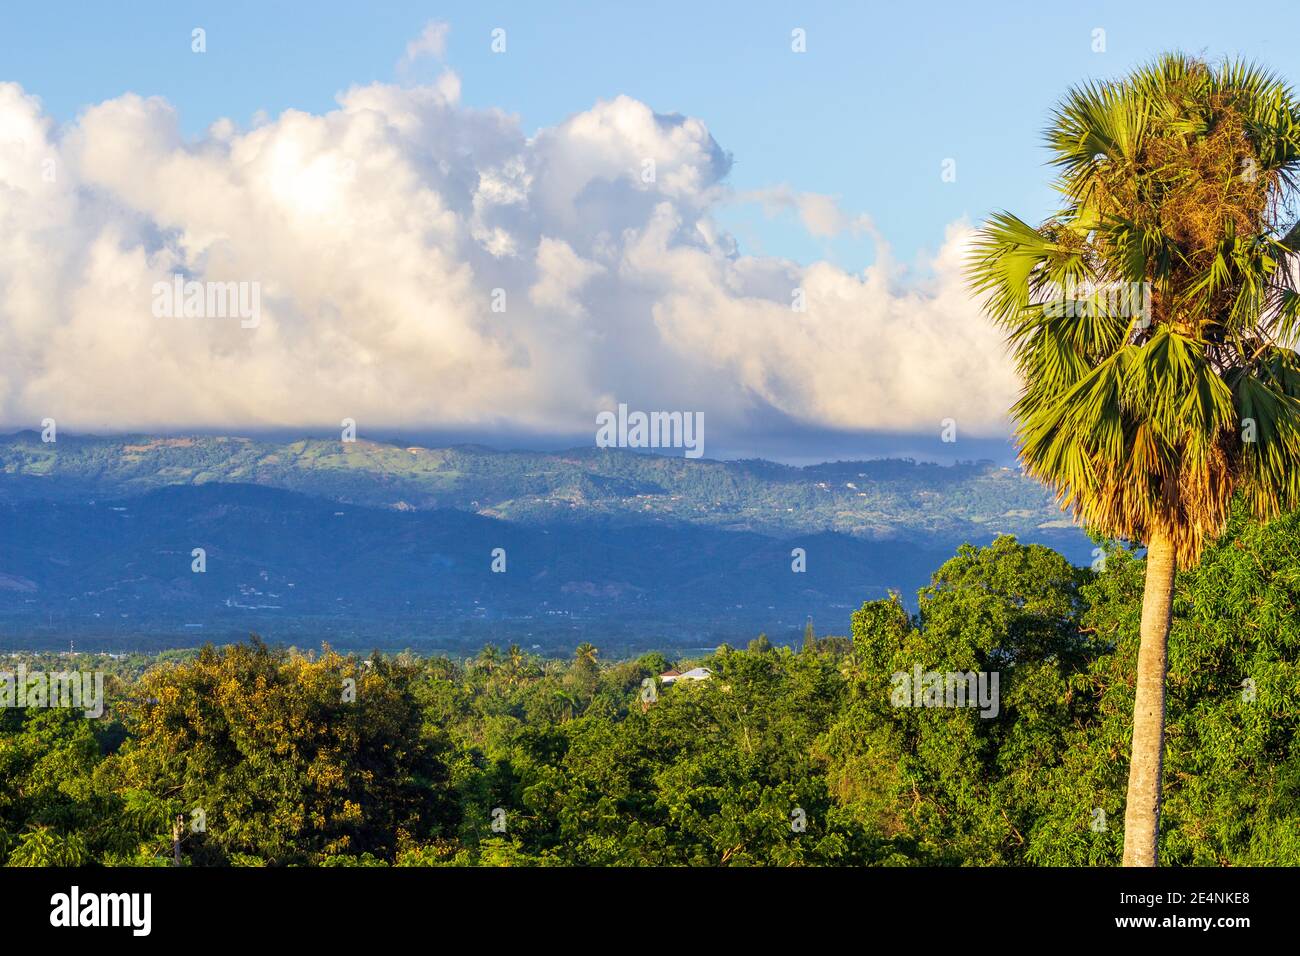 Les montagnes de la Cordillère Septentrionale, baignées de nuages blancs bouffieux, offrent une toile de fond aux palmiers, au feuillage tropical et aux terres agricoles. République dominicaine. Banque D'Images